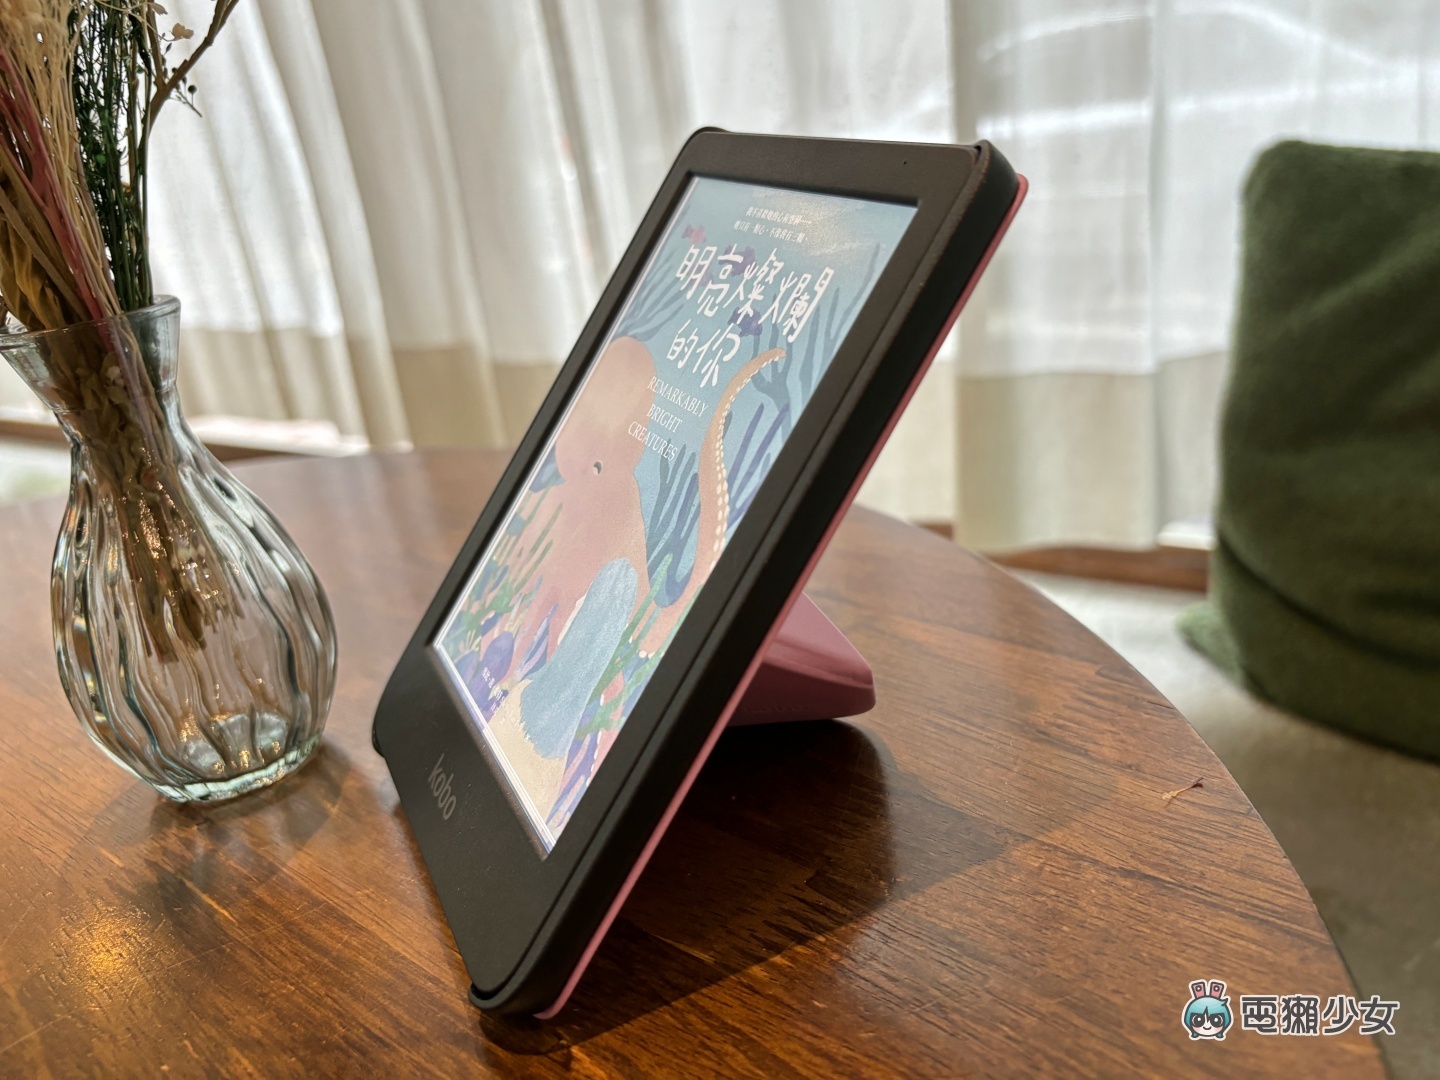 出門｜樂天 Kobo 新款彩色電子書閱讀器亮相！7 吋的『 Kobo Libra Colour 』還有支援手寫觸控筆